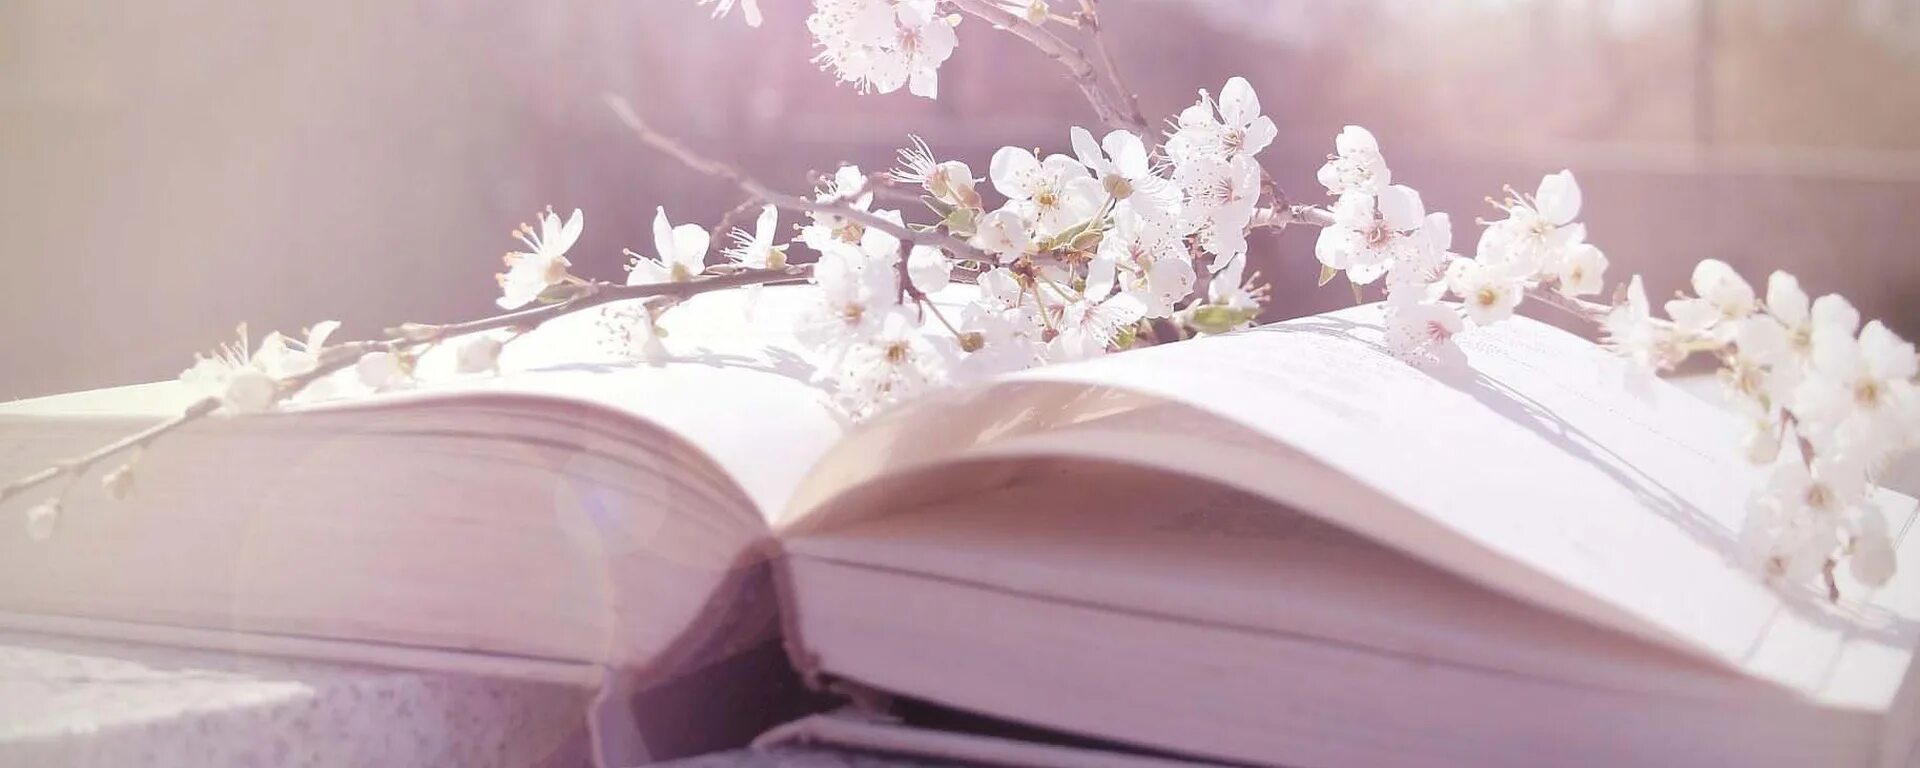 Вк группы книги. Книга цветы. Книги на фоне цветов. Красивые обложки. Нежные книги.